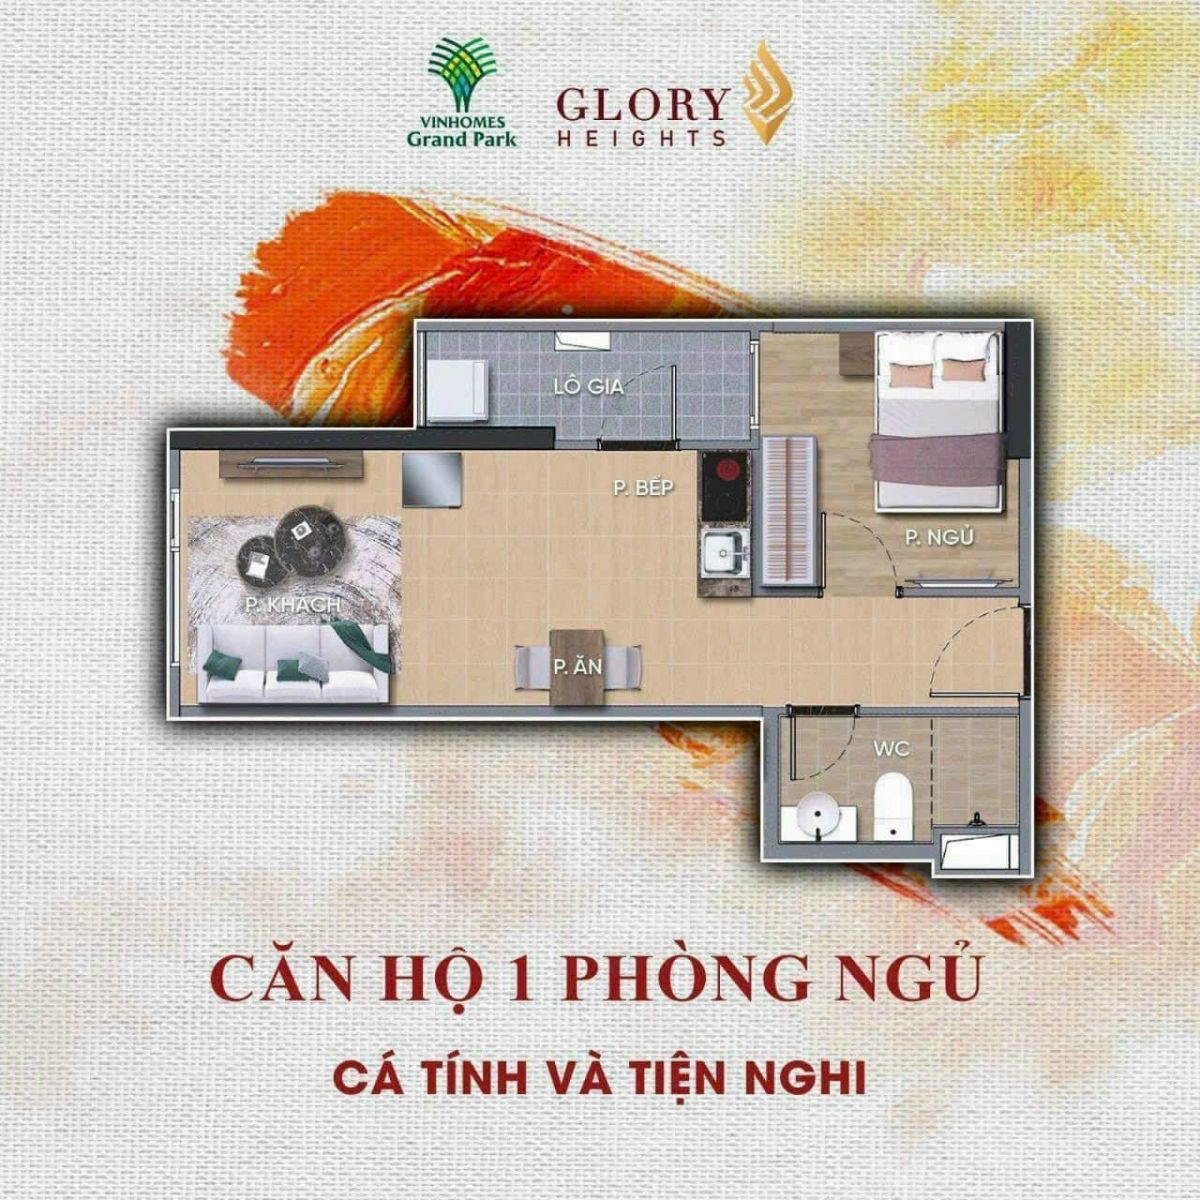 Thiết kế căn hộ 1 phòng ngủ - Phân Khu Glory Heights Vinhomes Grand Park Quận 9